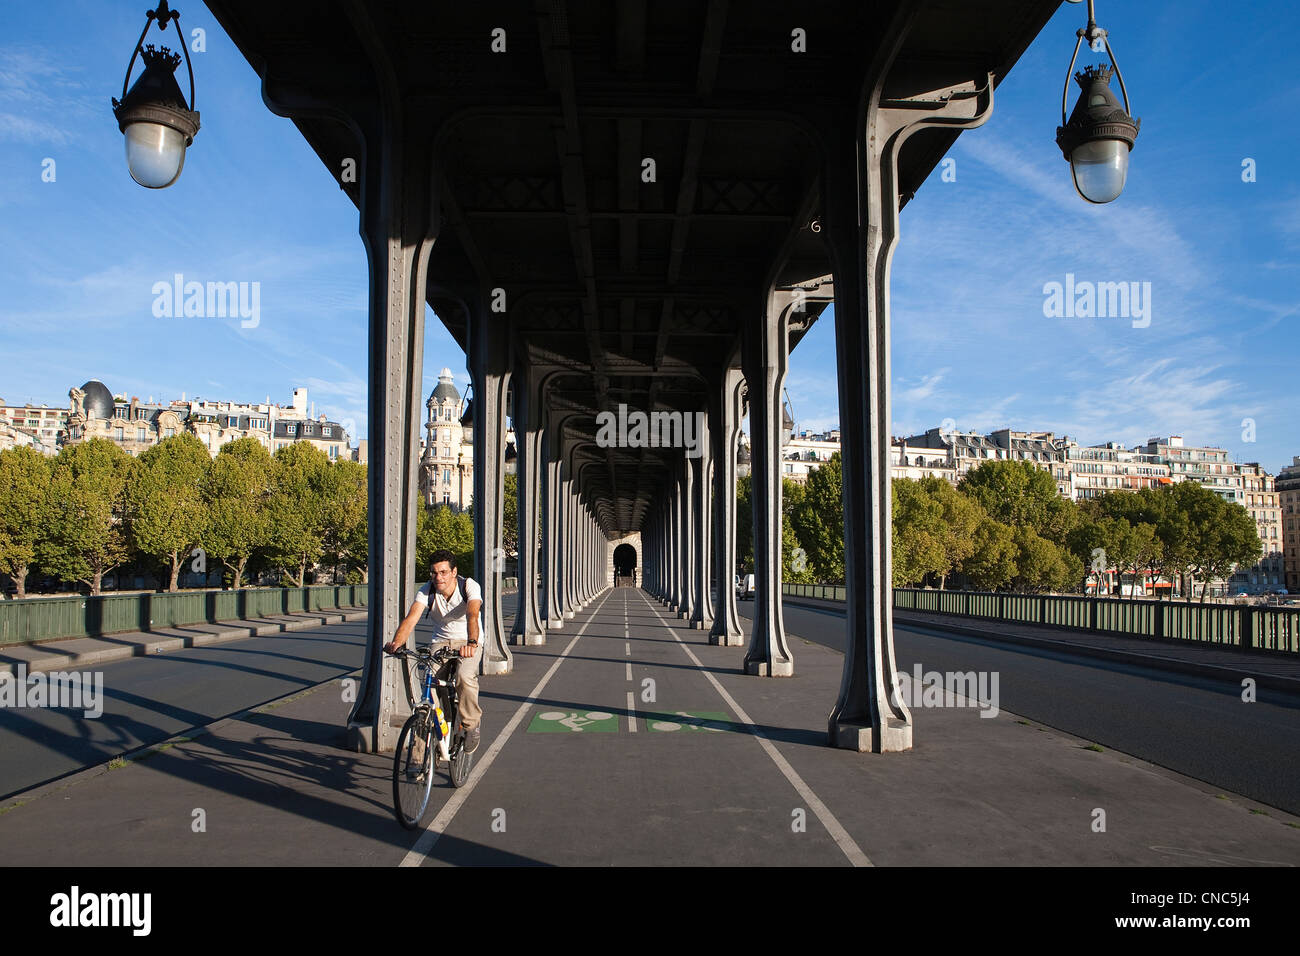 France, Paris, Pont Bir-Hakeim, man riding a bicycle on the Pont Bir-Hakeim, aerial metro line 6 and Passy area buildings Stock Photo